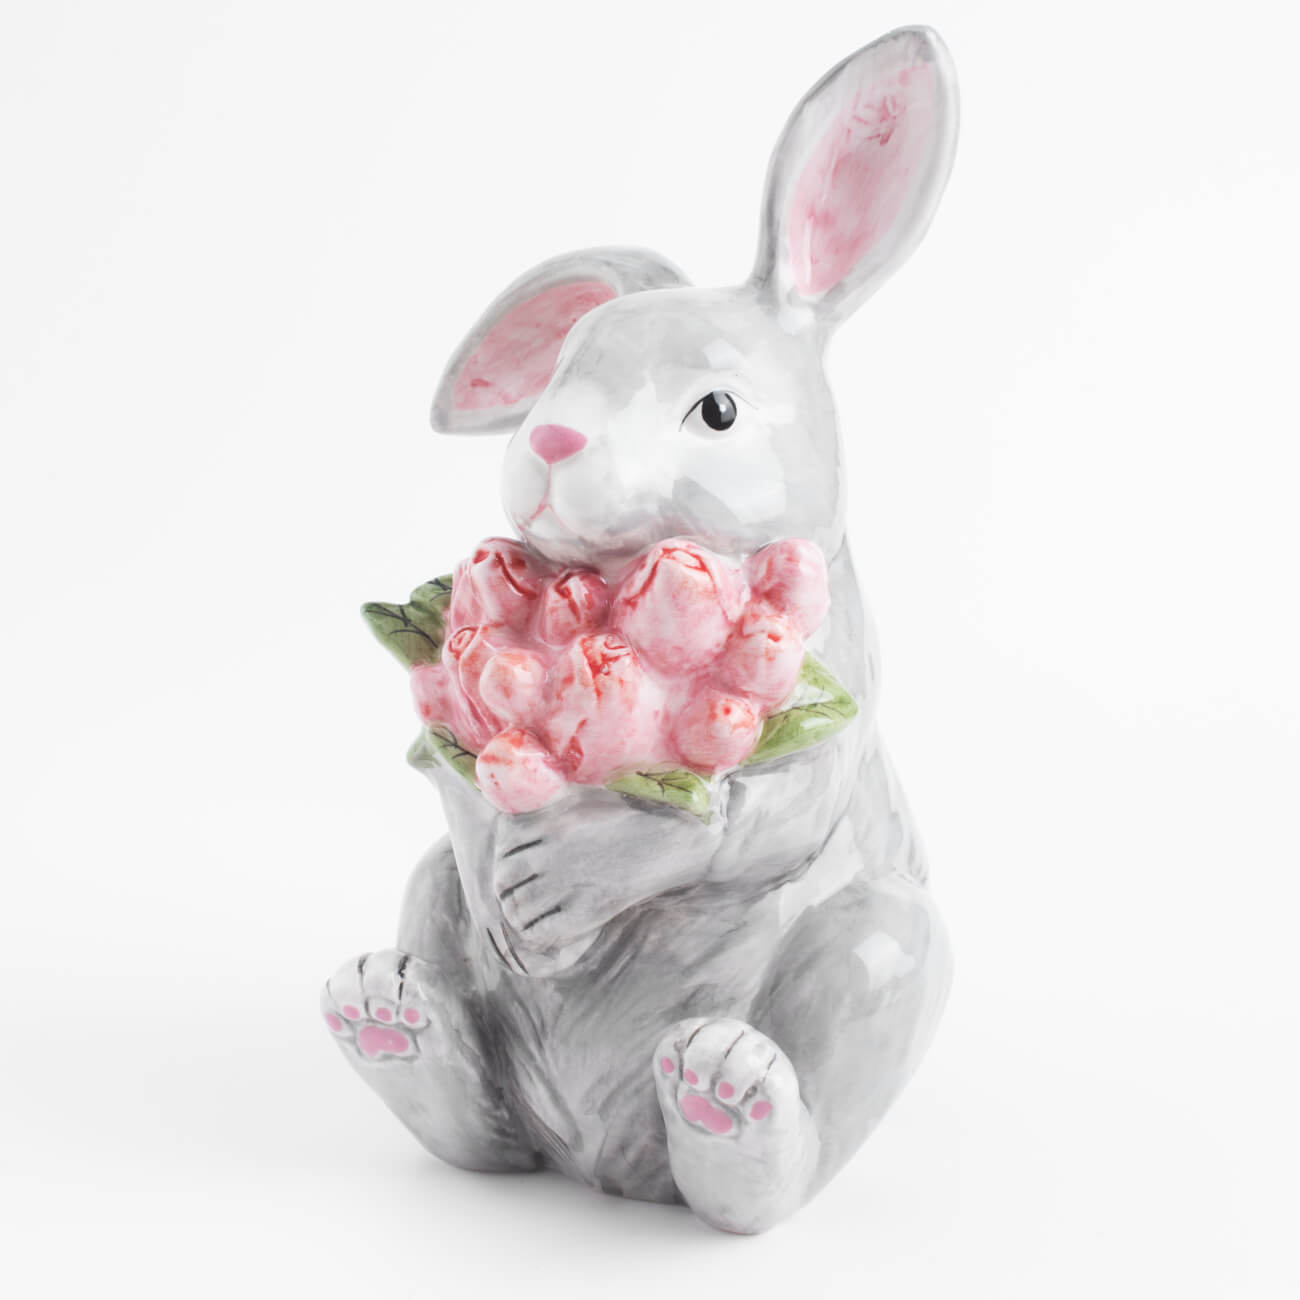 статуэтка 15 см фарфор porcelain белая кролик в ах pure easter Статуэтка, 23 см, керамика, серая, Кролик с тюльпанами, Pure Easter